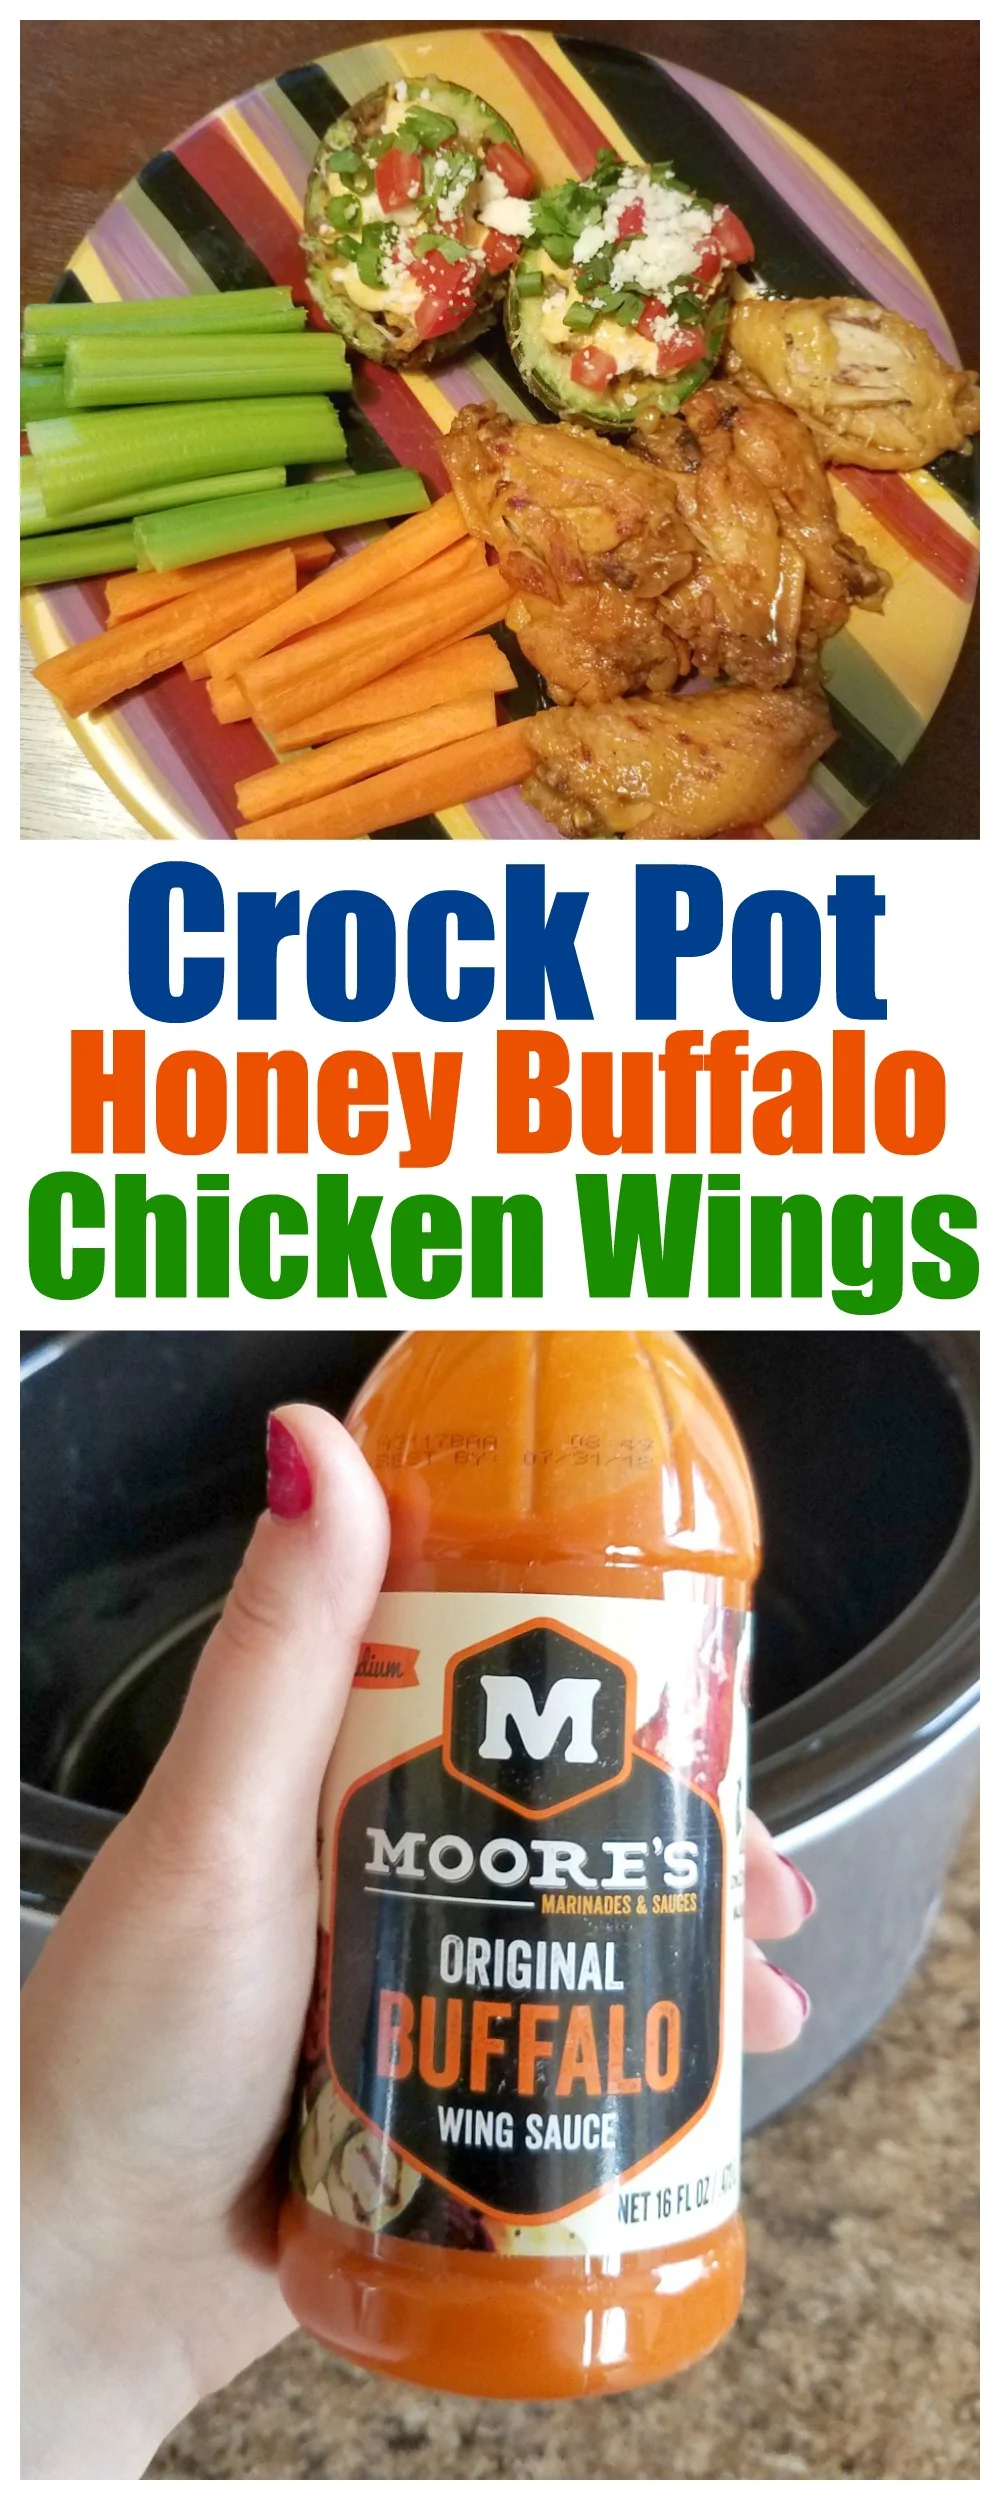 Crock Pot Honey Buffalo Chicken Wings